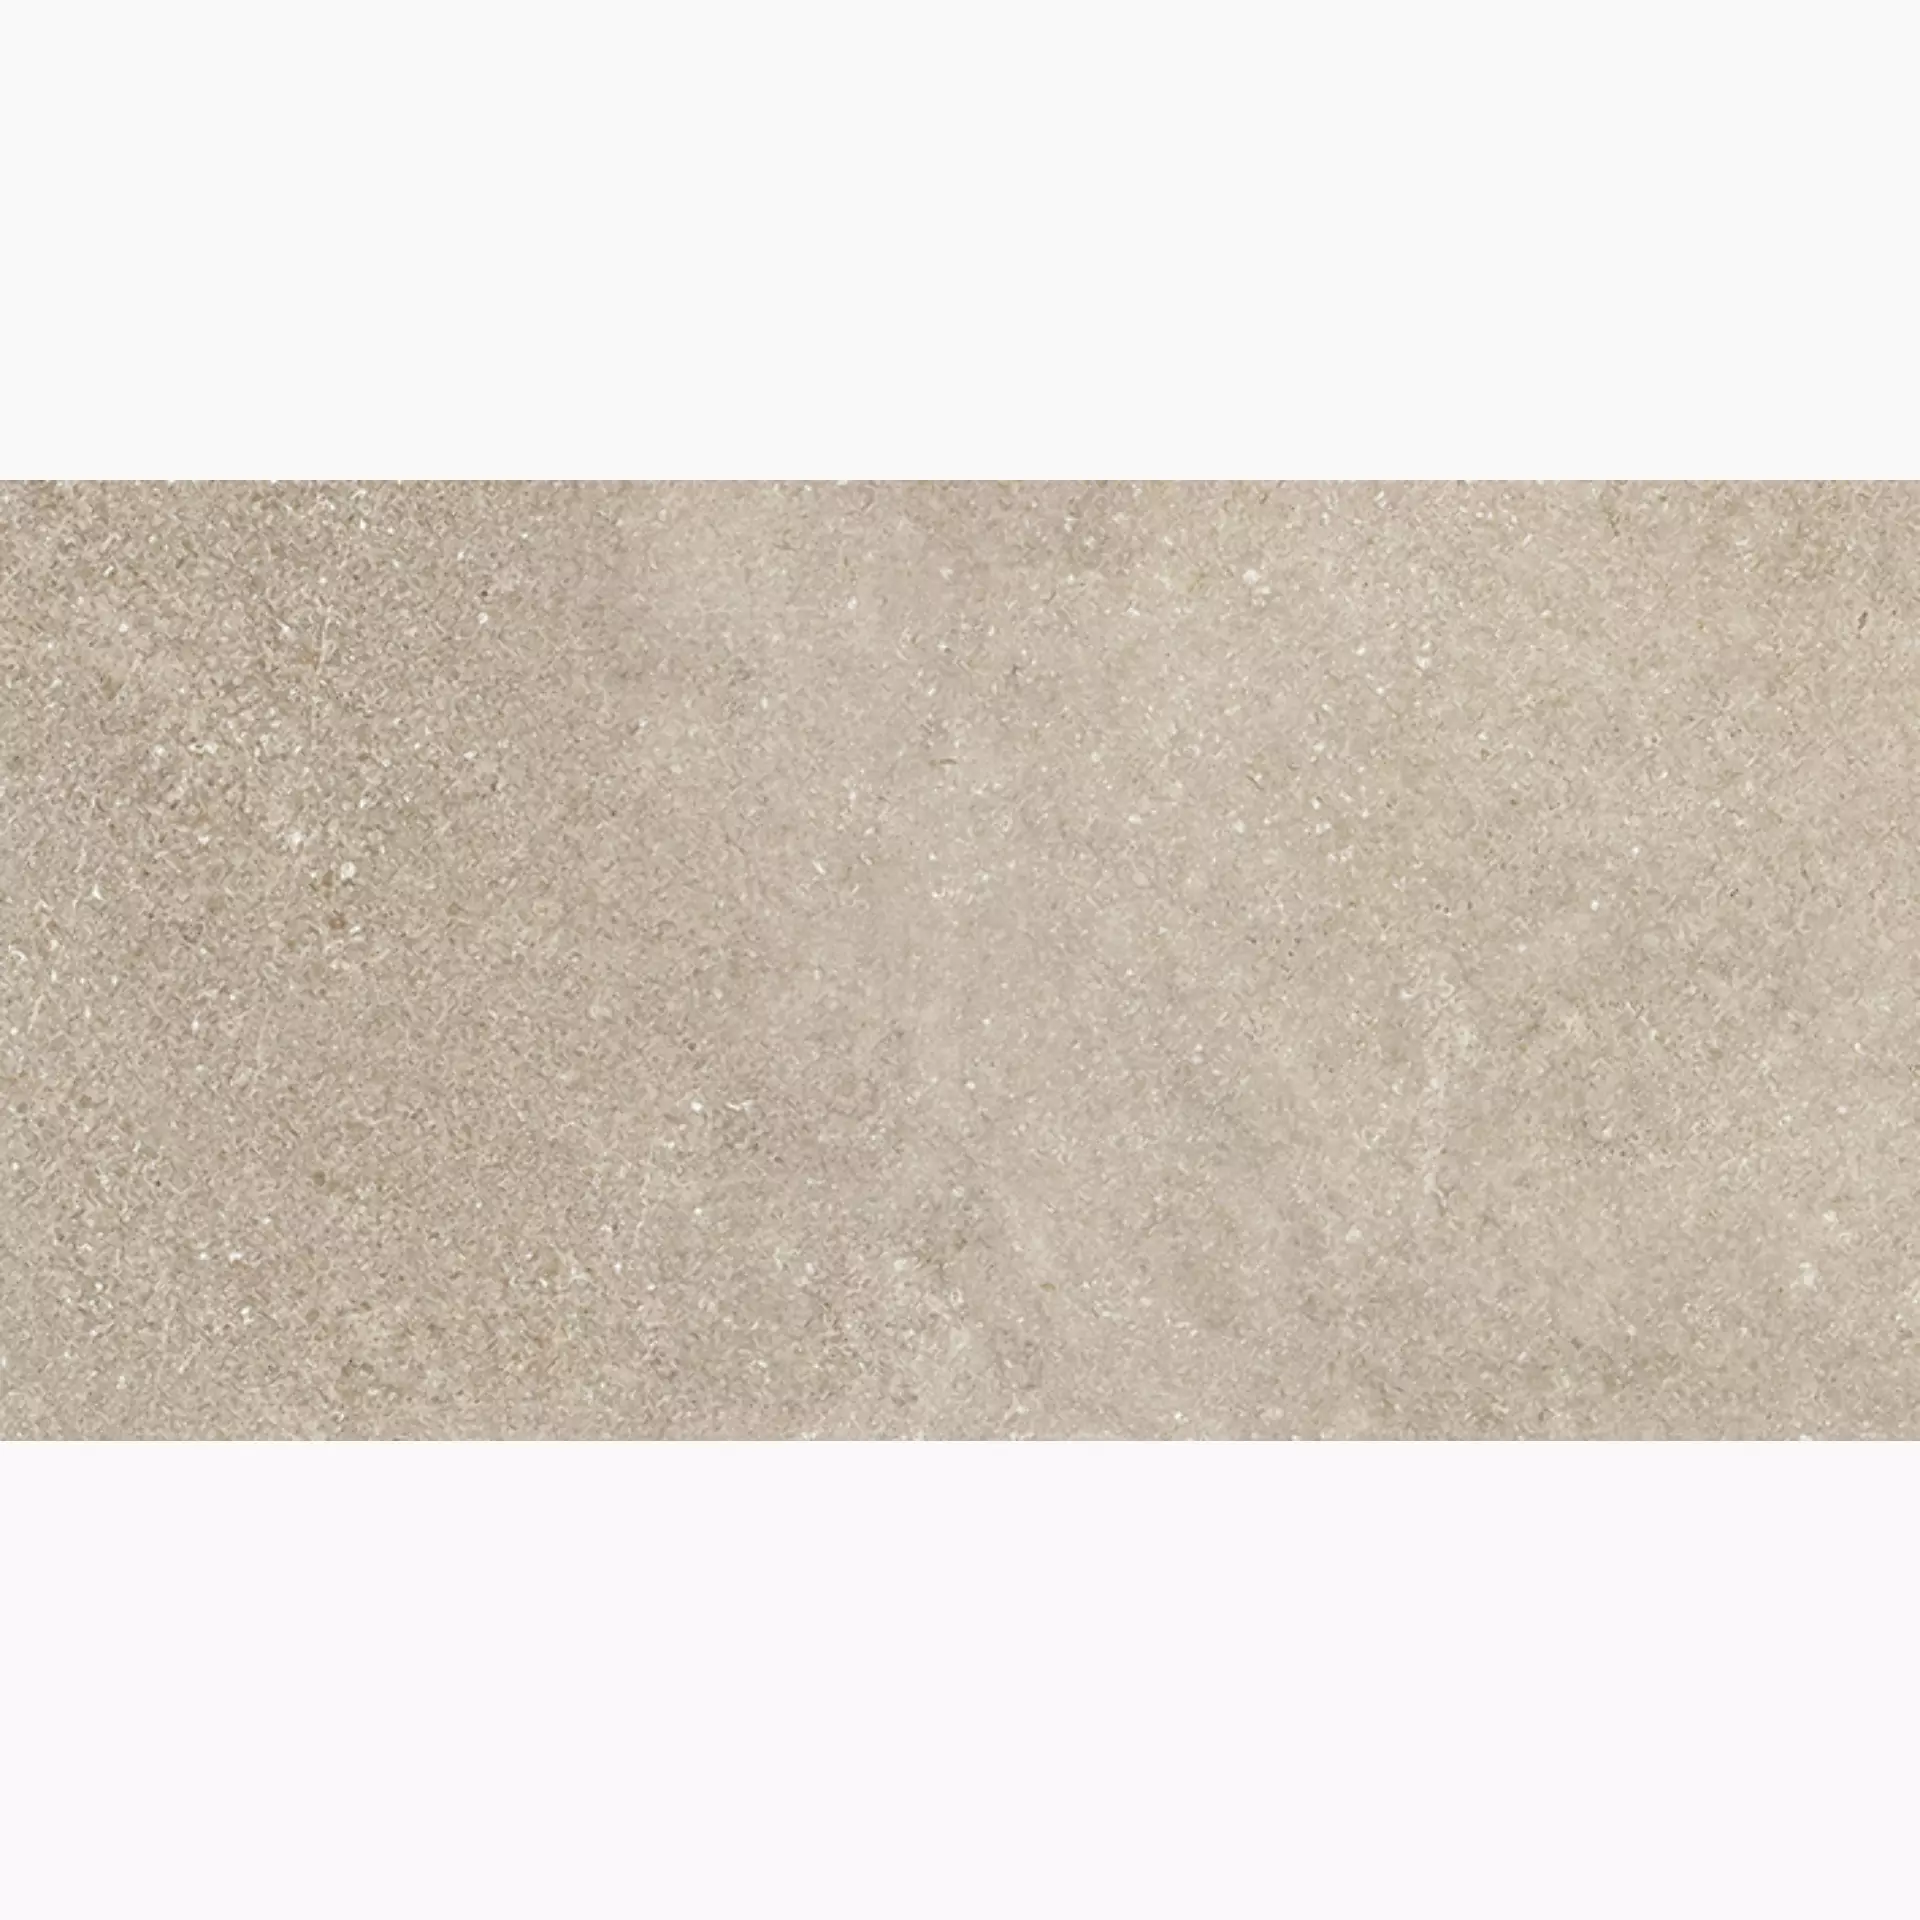 Wandfliese,Bodenfliese Villeroy & Boch Lucca Sand Matt Sand 2870-LS70 matt 30x60cm rektifiziert 9mm